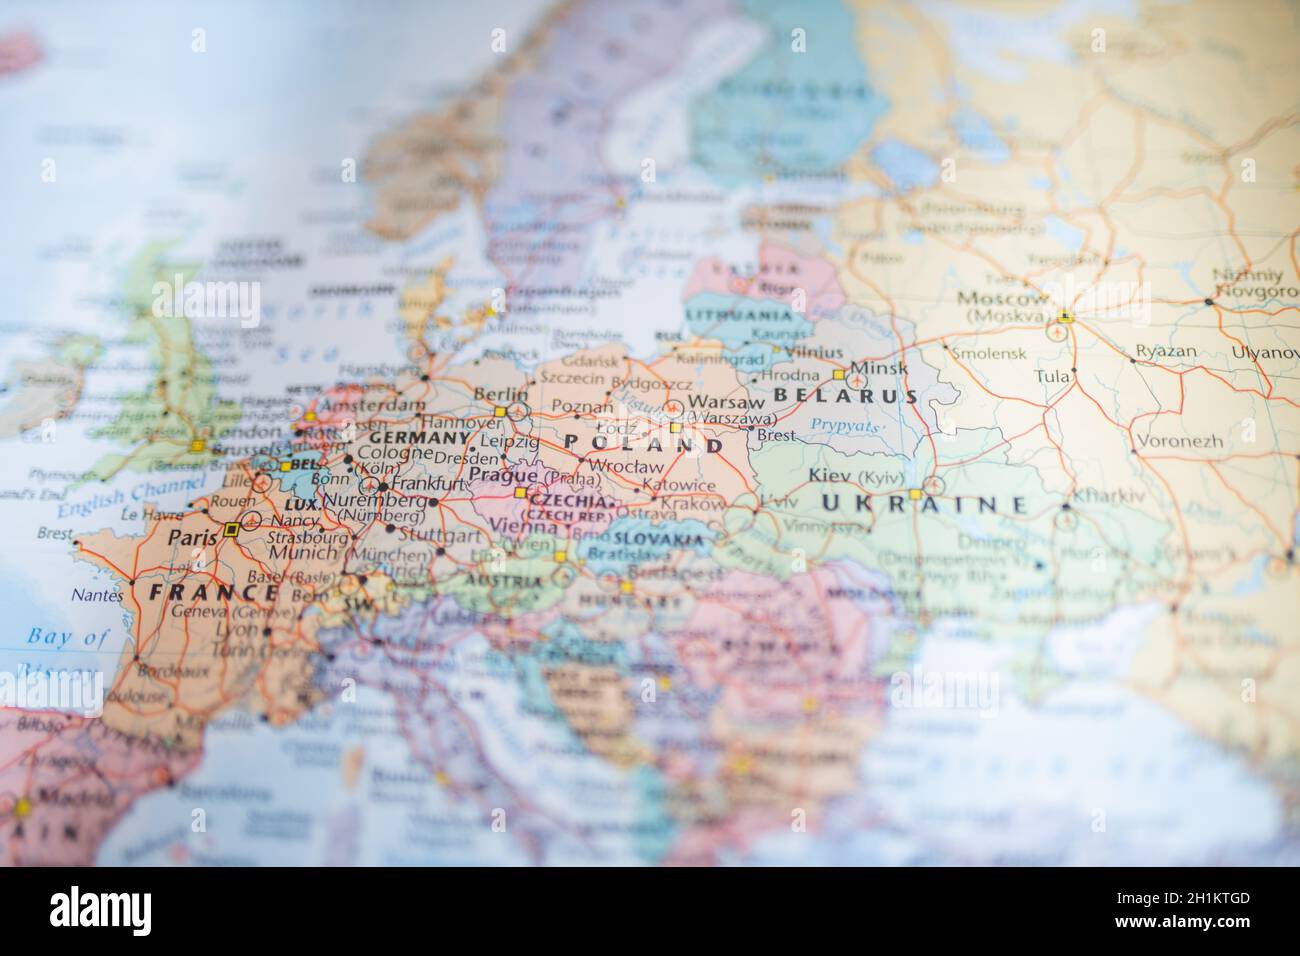 Imagen de Polonia, Belarús, Ucrania, Alemania y Francia en un mapa europeo borroso Foto de stock